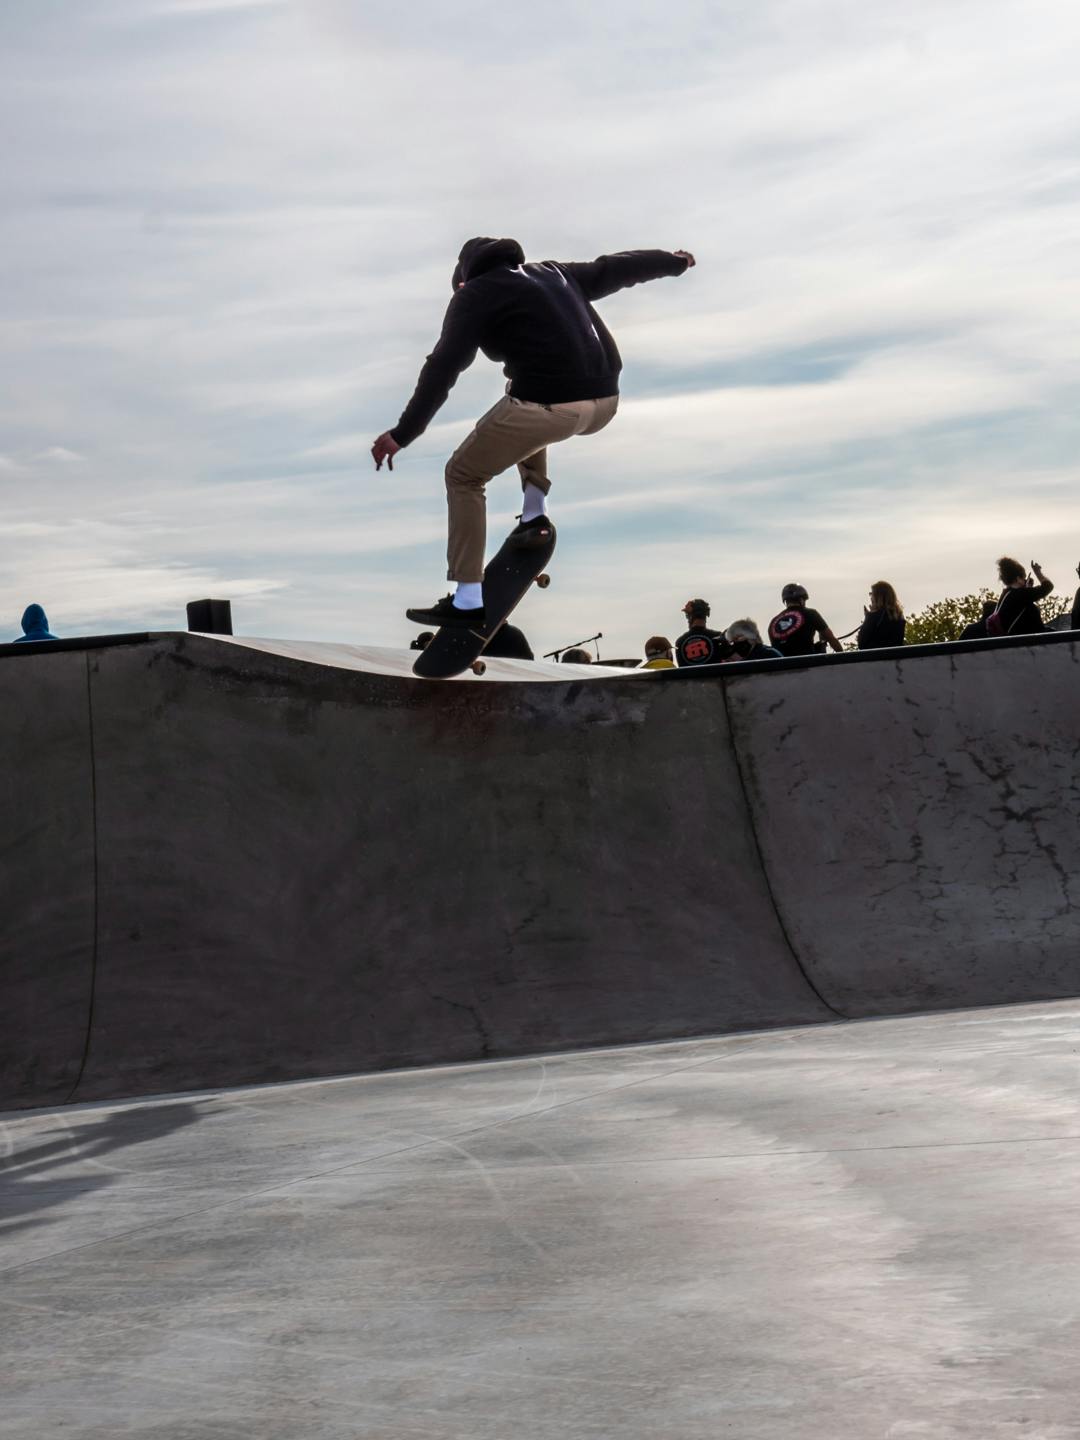 Lincoln residents enjoy the skatepark